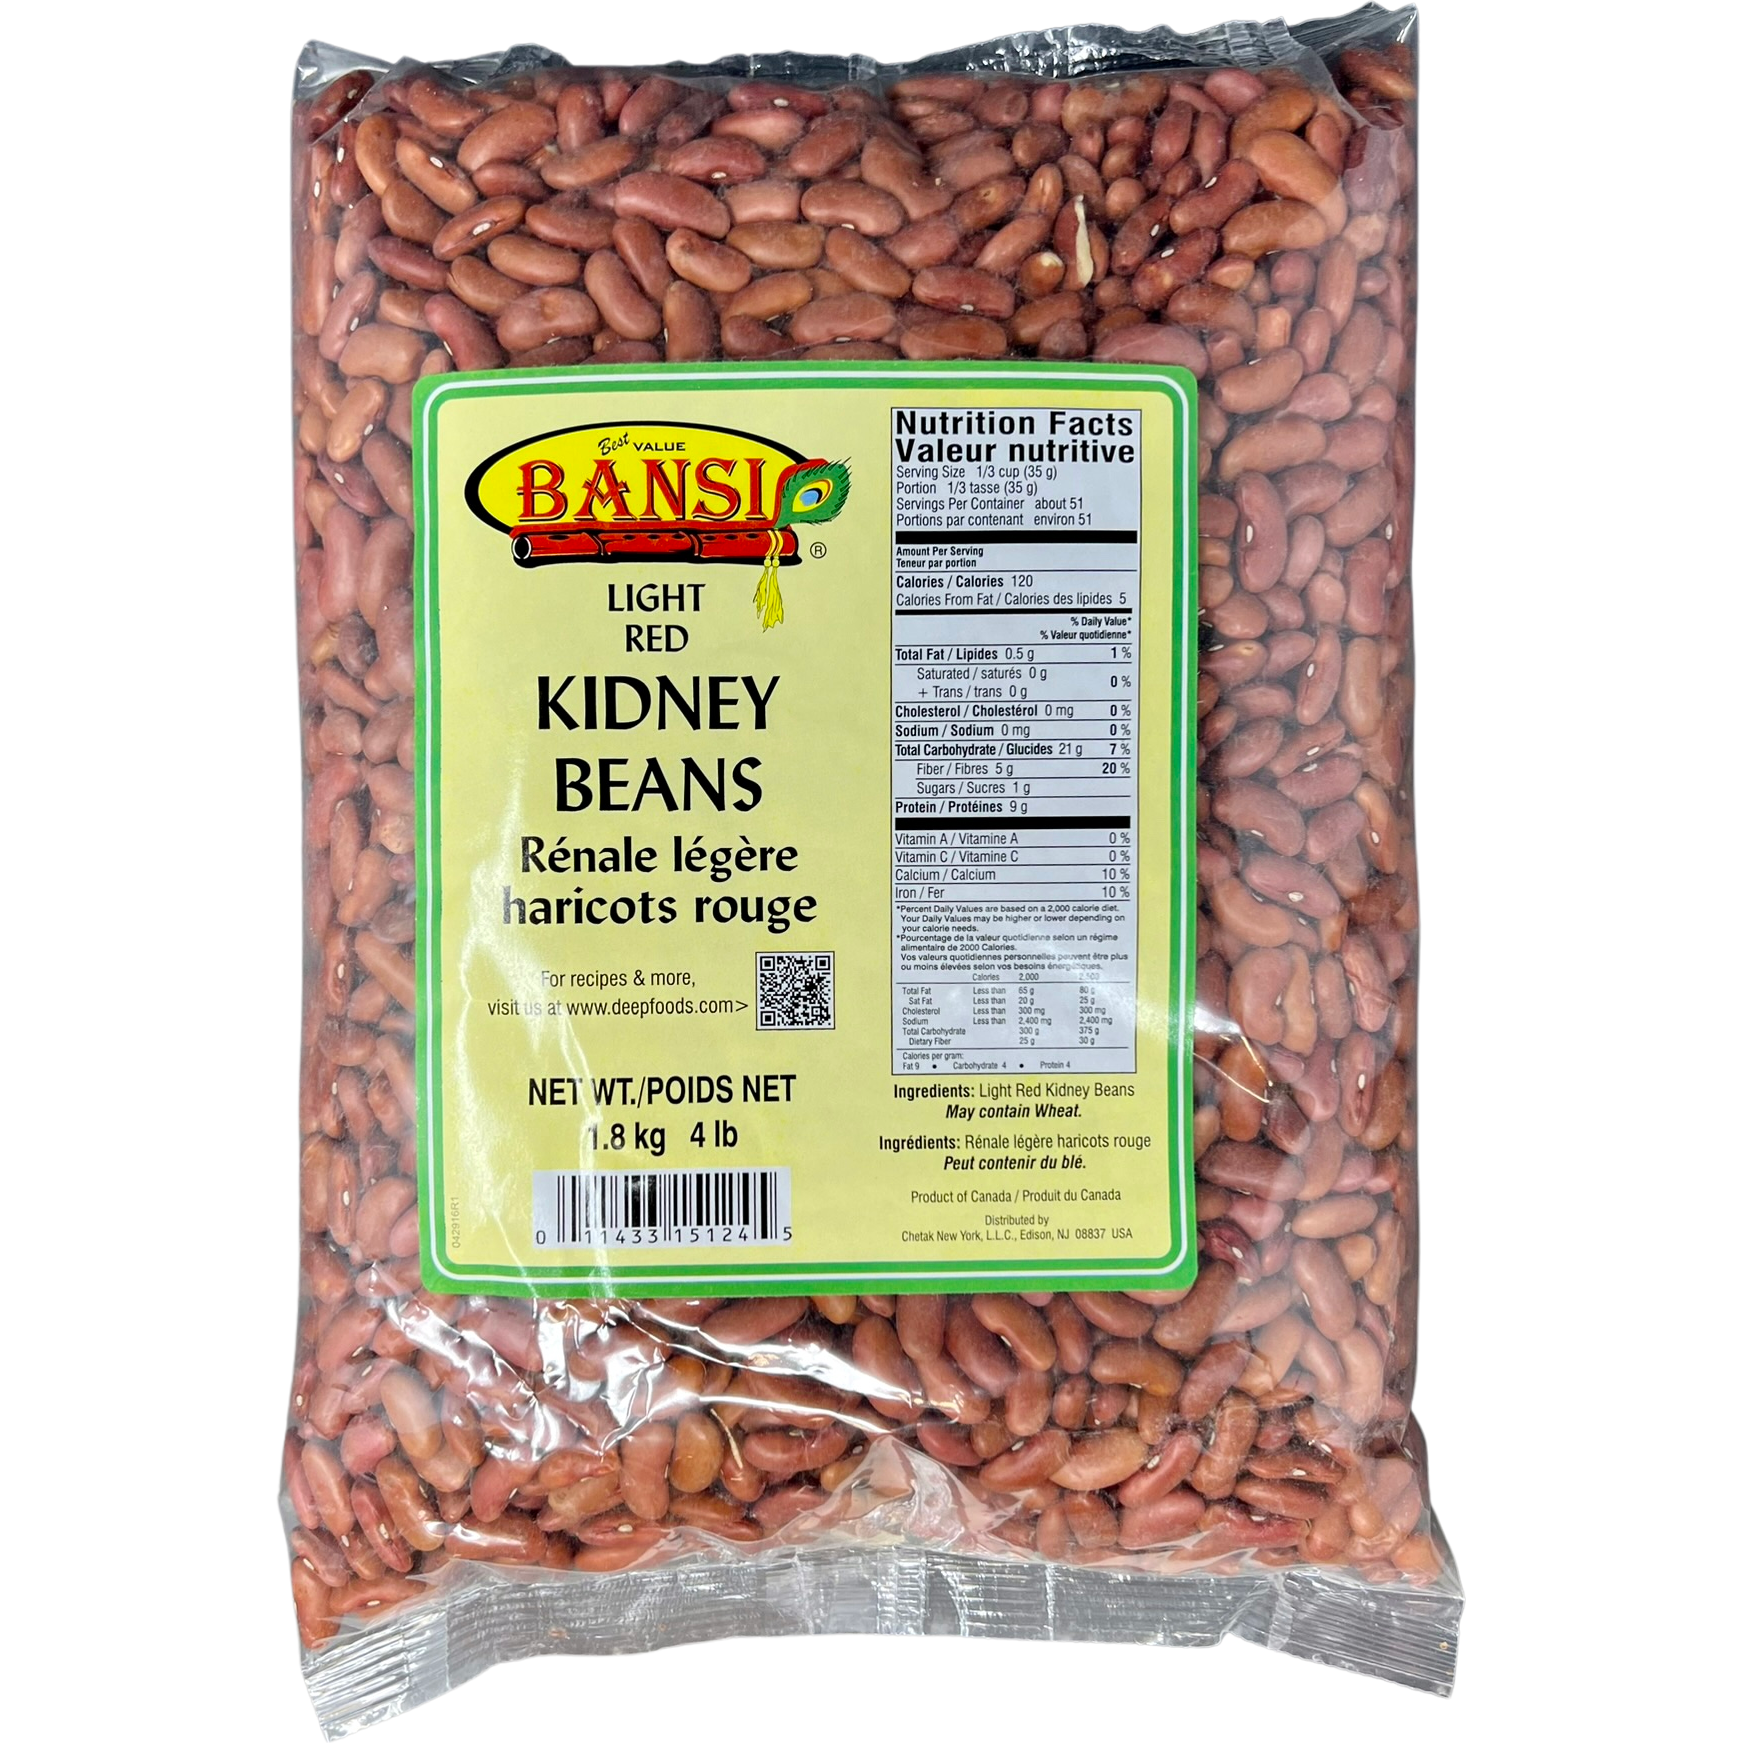 Case of 10 - Bansi Light Red Kidney Beans - 1.8 Kg (4 Lb)